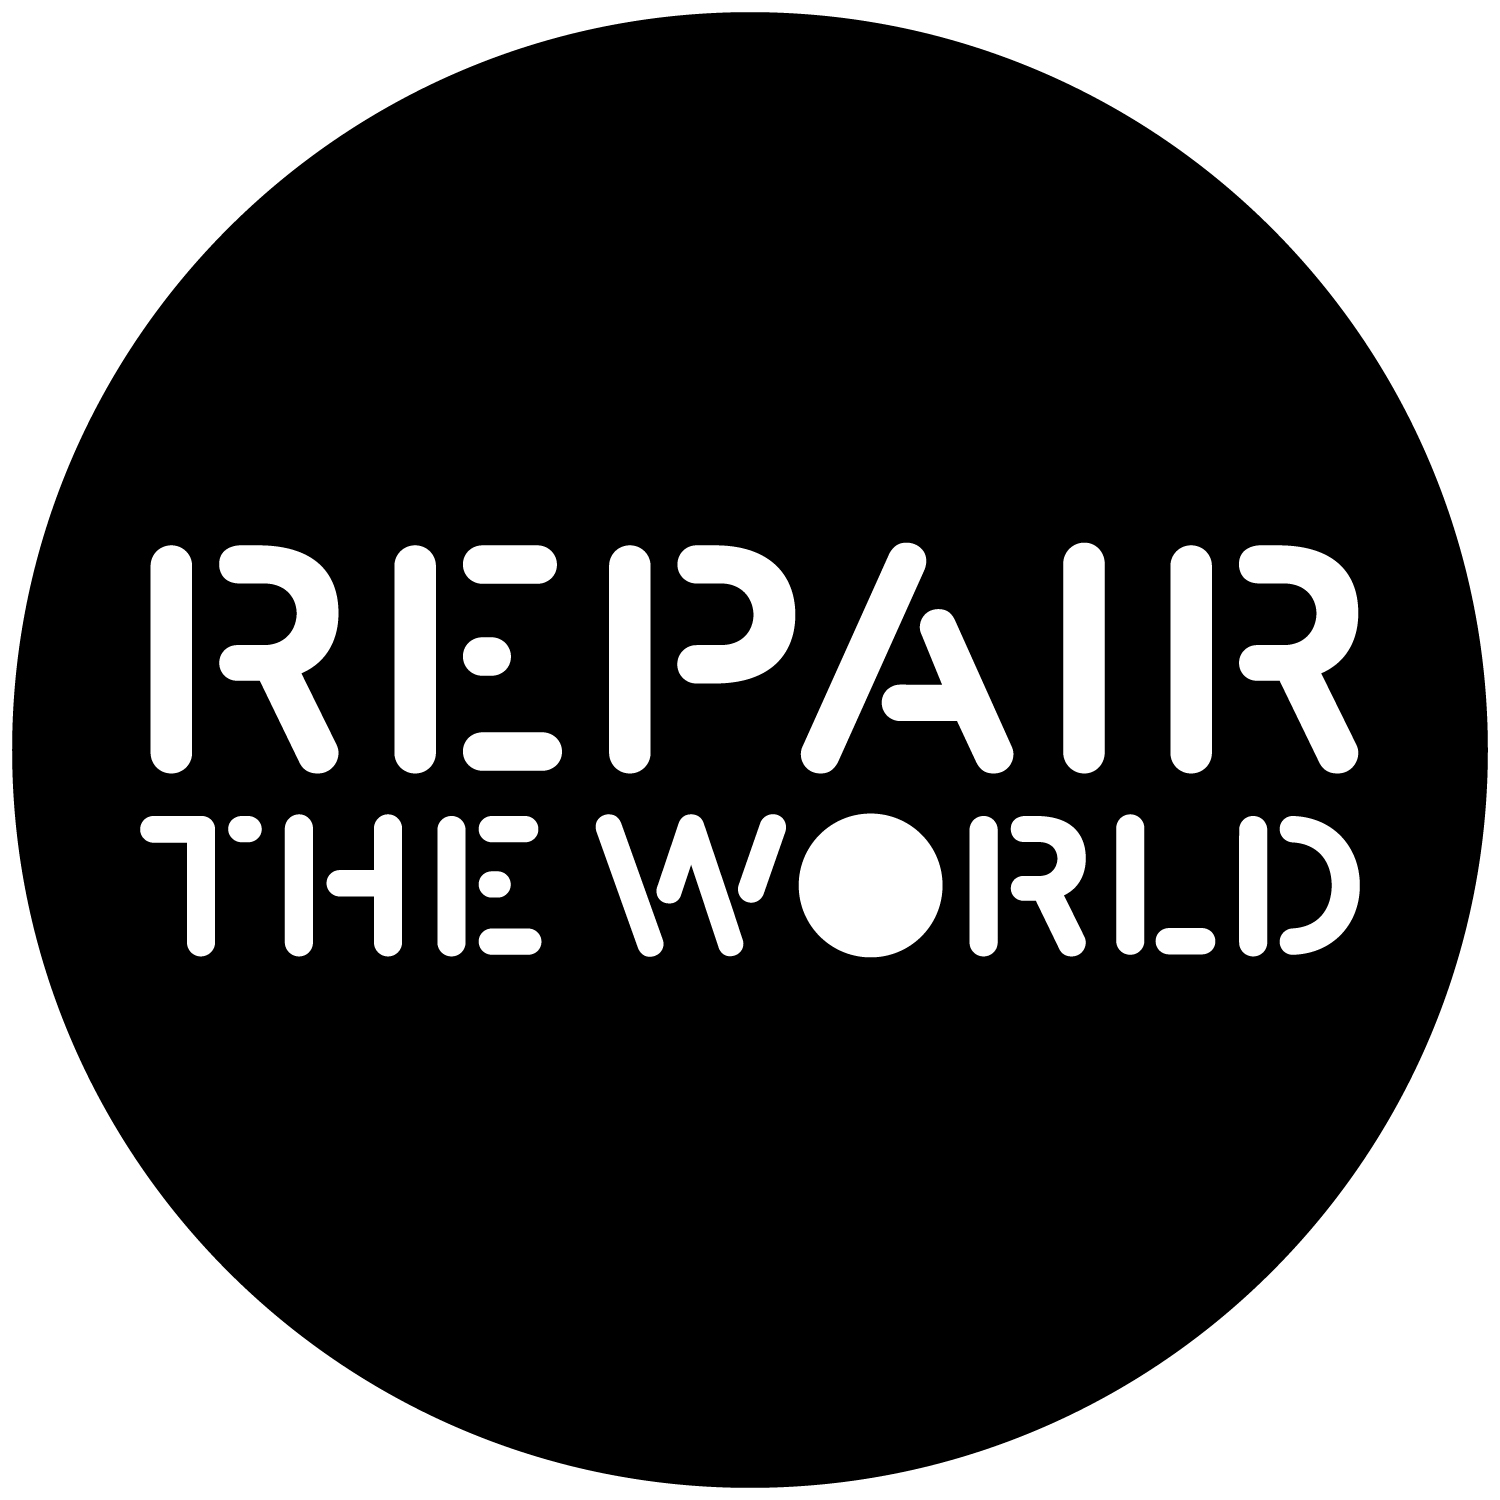 Week 8: “Repair Part 1”